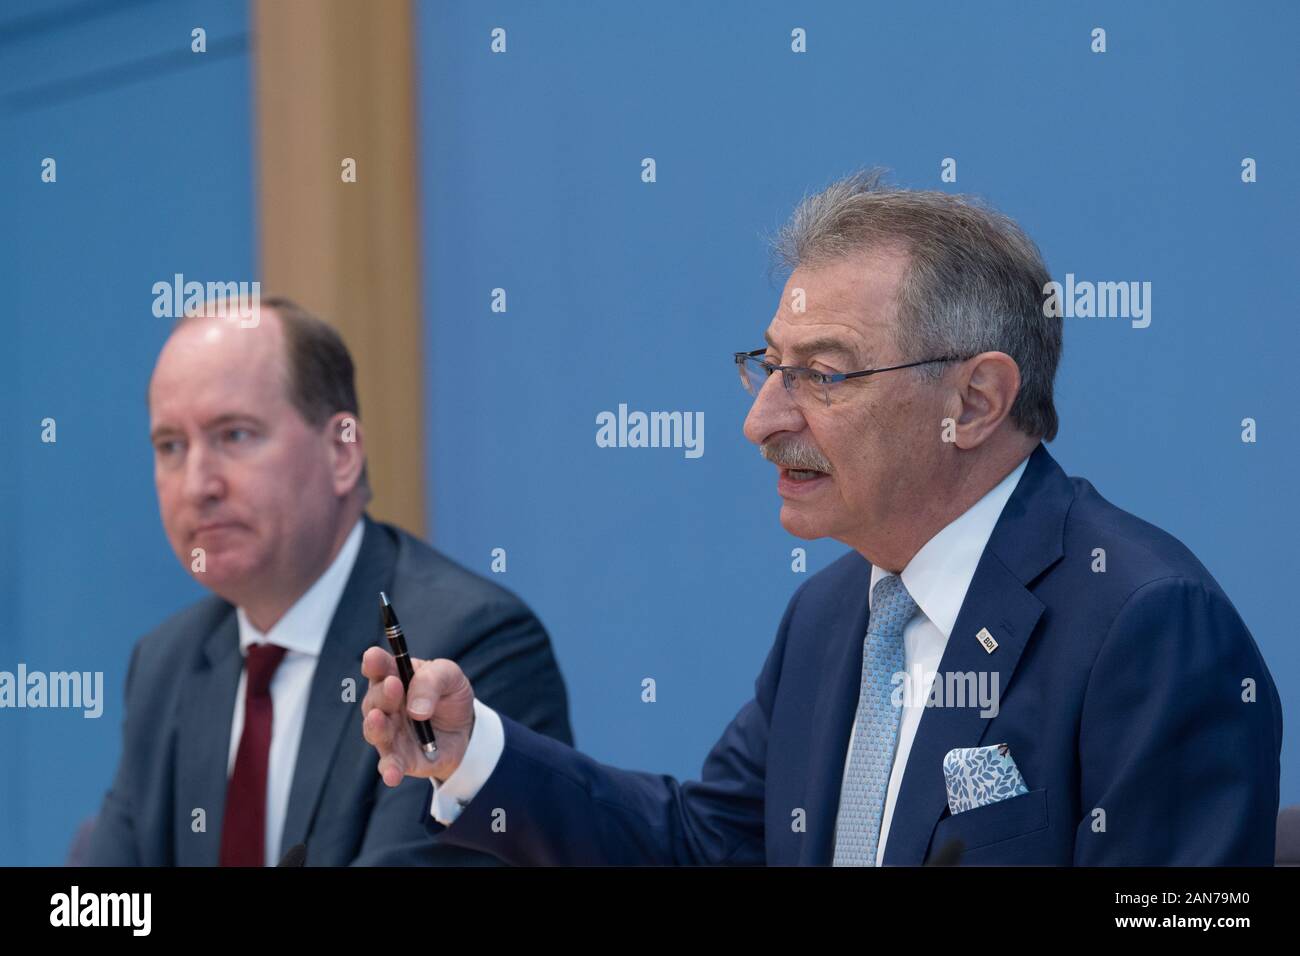 16 janvier 2020, Berlin : Joachim Lang (l), BDI Chef de la direction, et  Dieter Kempf, Président de la BDI, à la conférence de presse de la  Fédération des Industries allemandes (BDI)